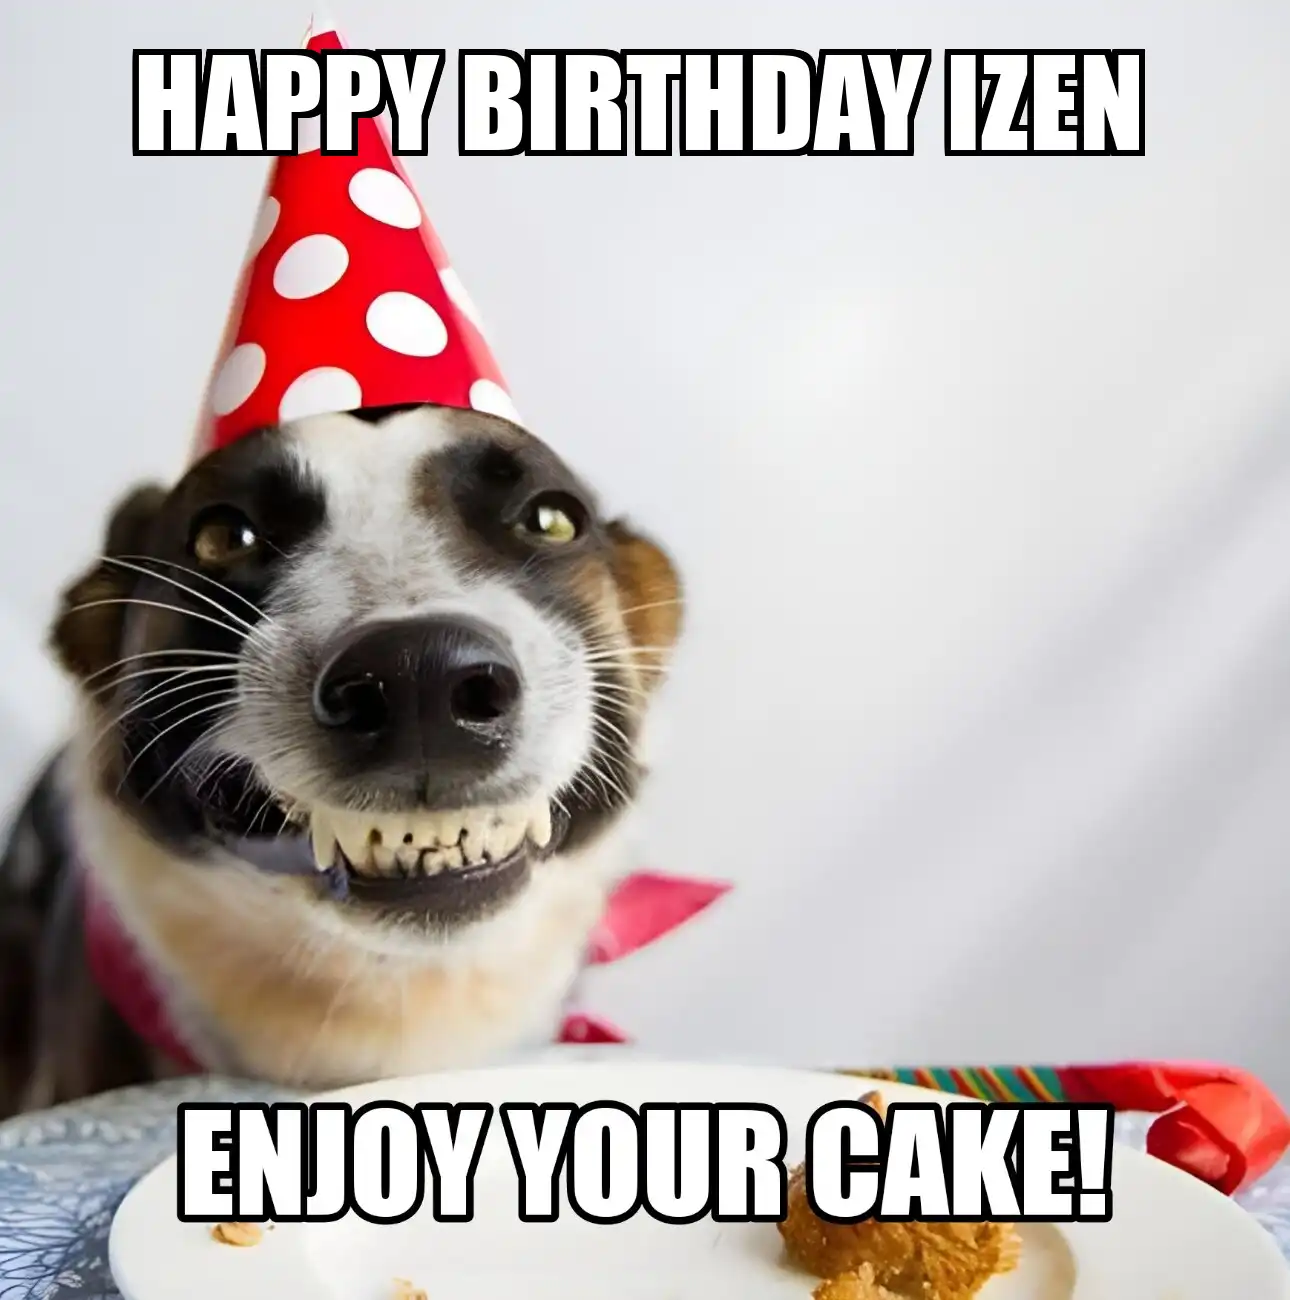 Happy Birthday Izen Enjoy Your Cake Dog Meme